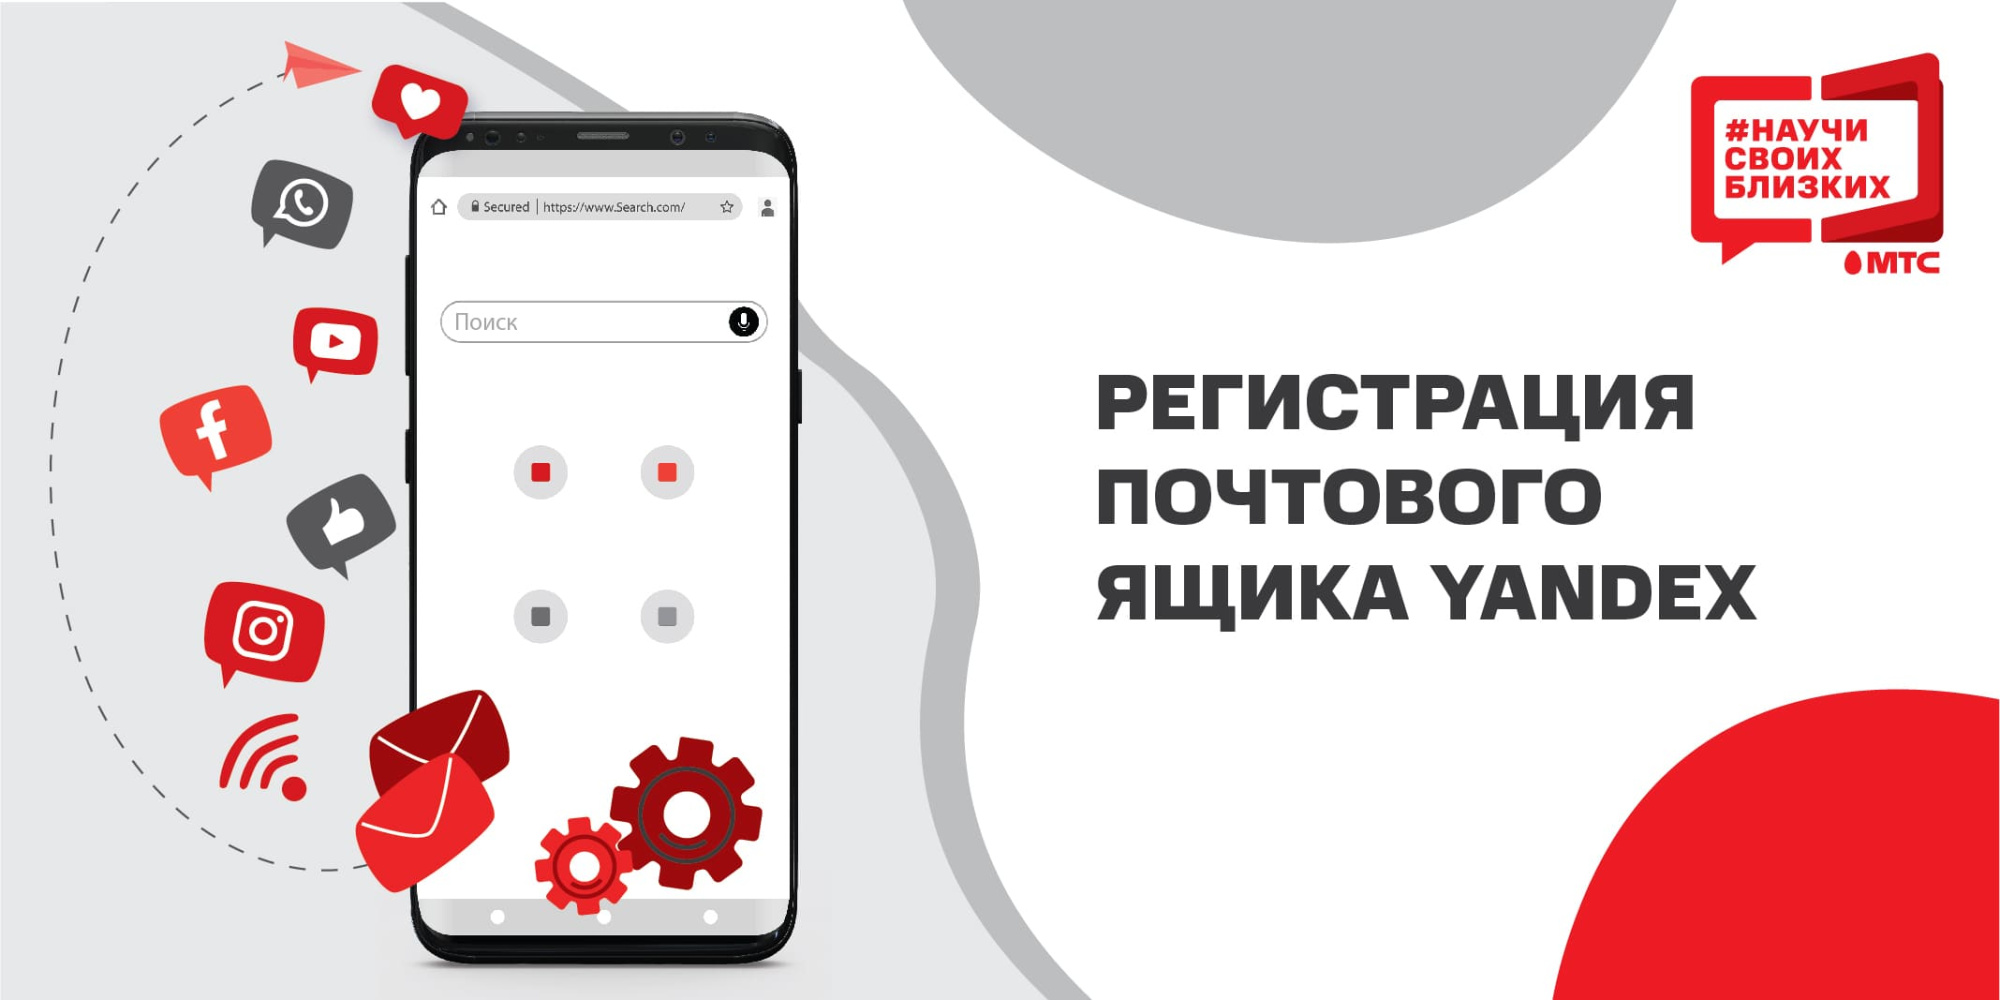 Регистрация почтового ящика Yandeх